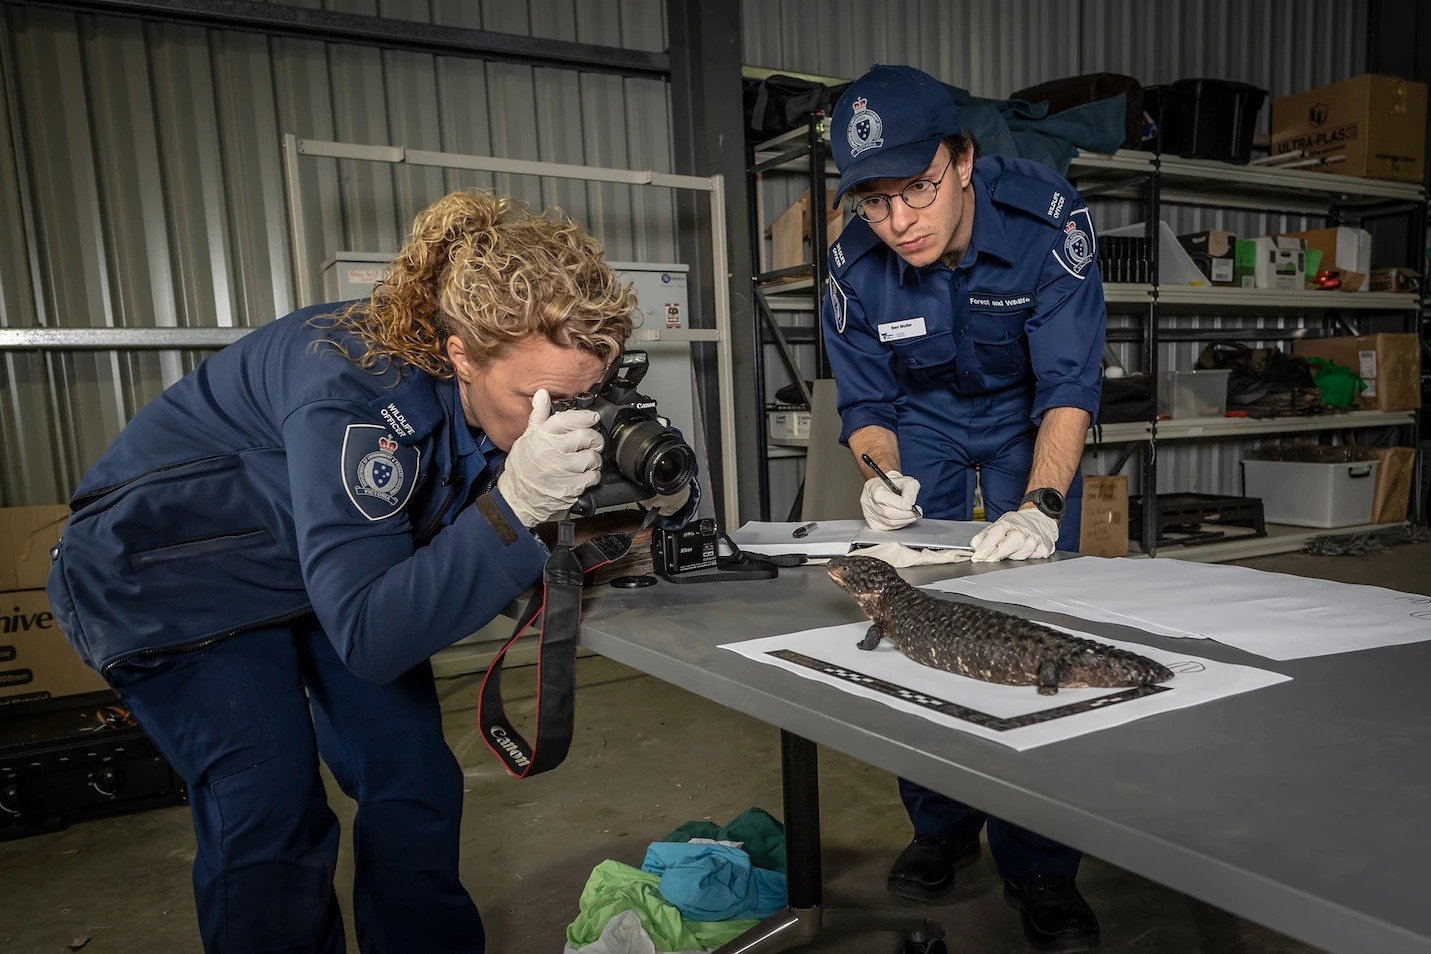 資深森林與野生動物警察艾比．史密斯（Abby Smith），正為2019年2月在墨爾本查緝到的一隻松果蜥拍照存證。松果蜥是國際非法寵物貿易市場上最受歡迎的爬行類之一。